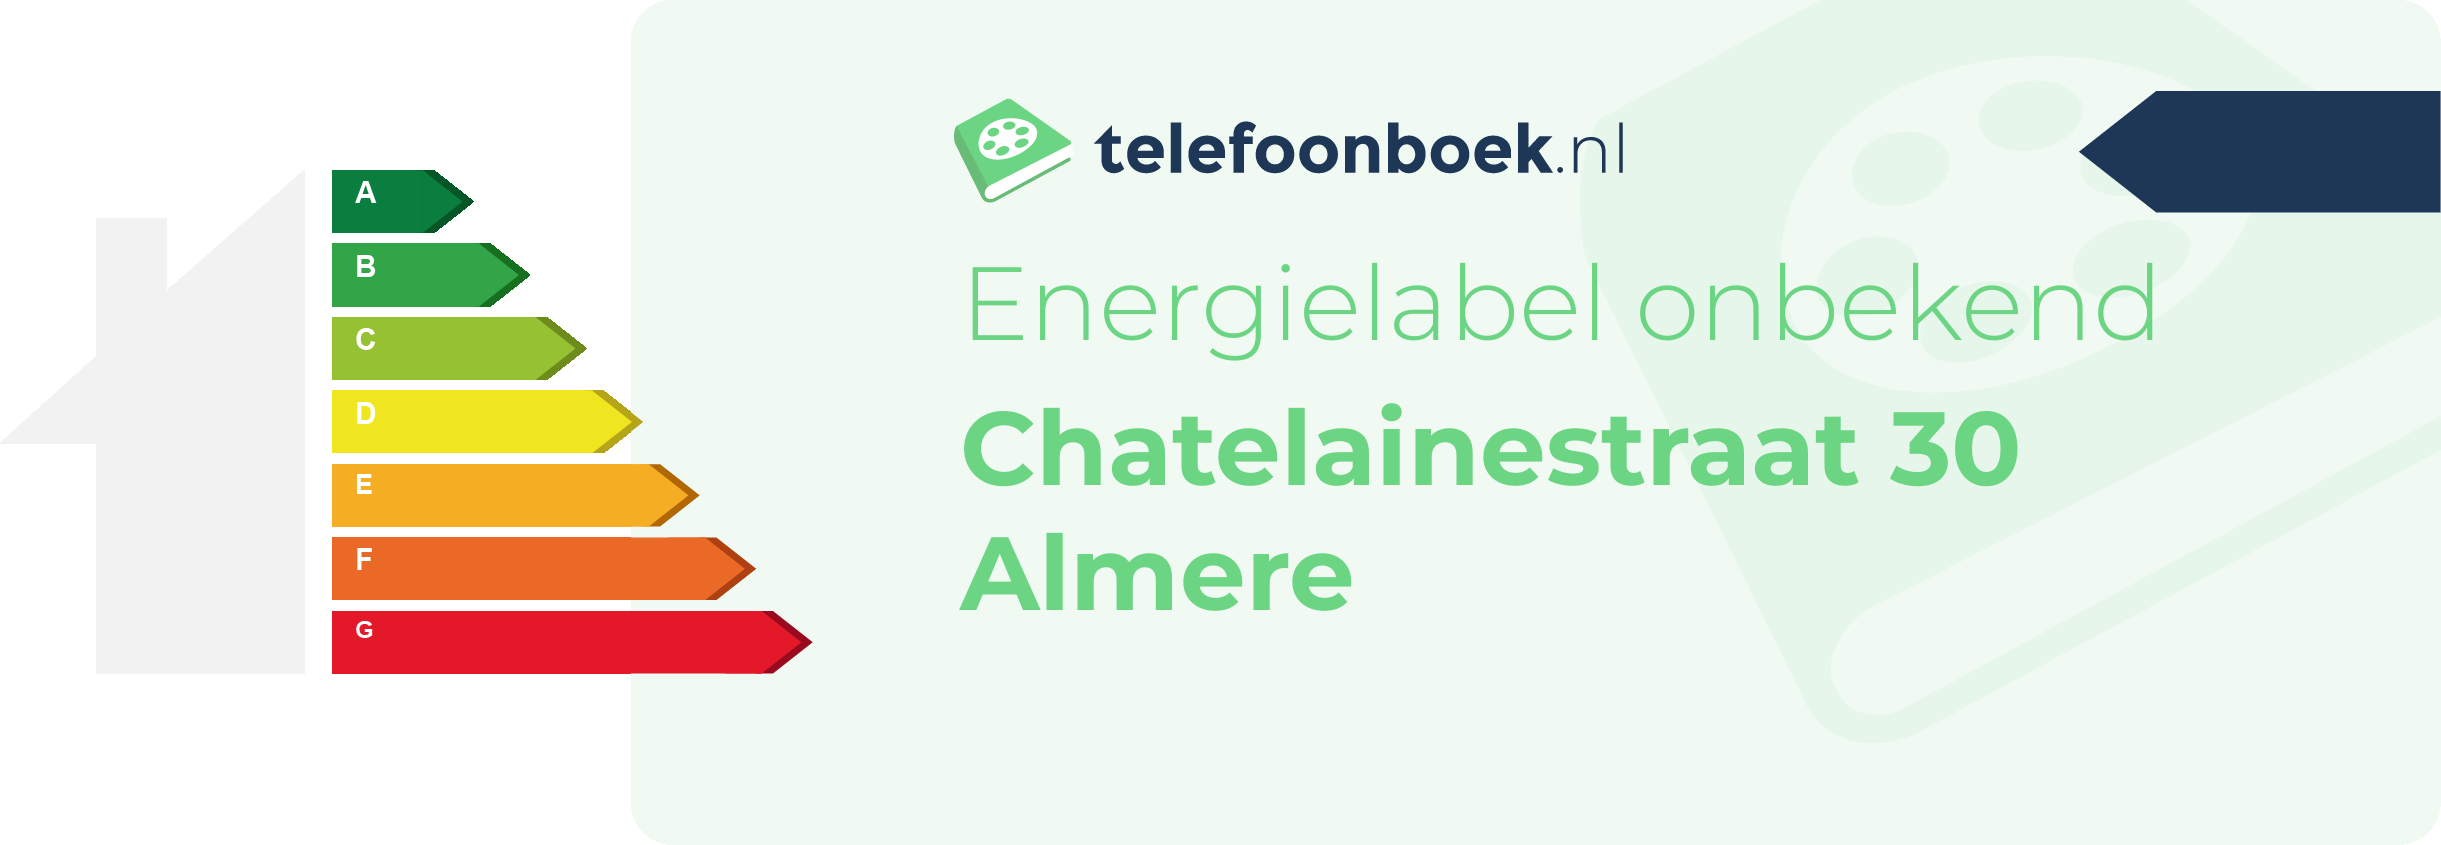 Energielabel Chatelainestraat 30 Almere